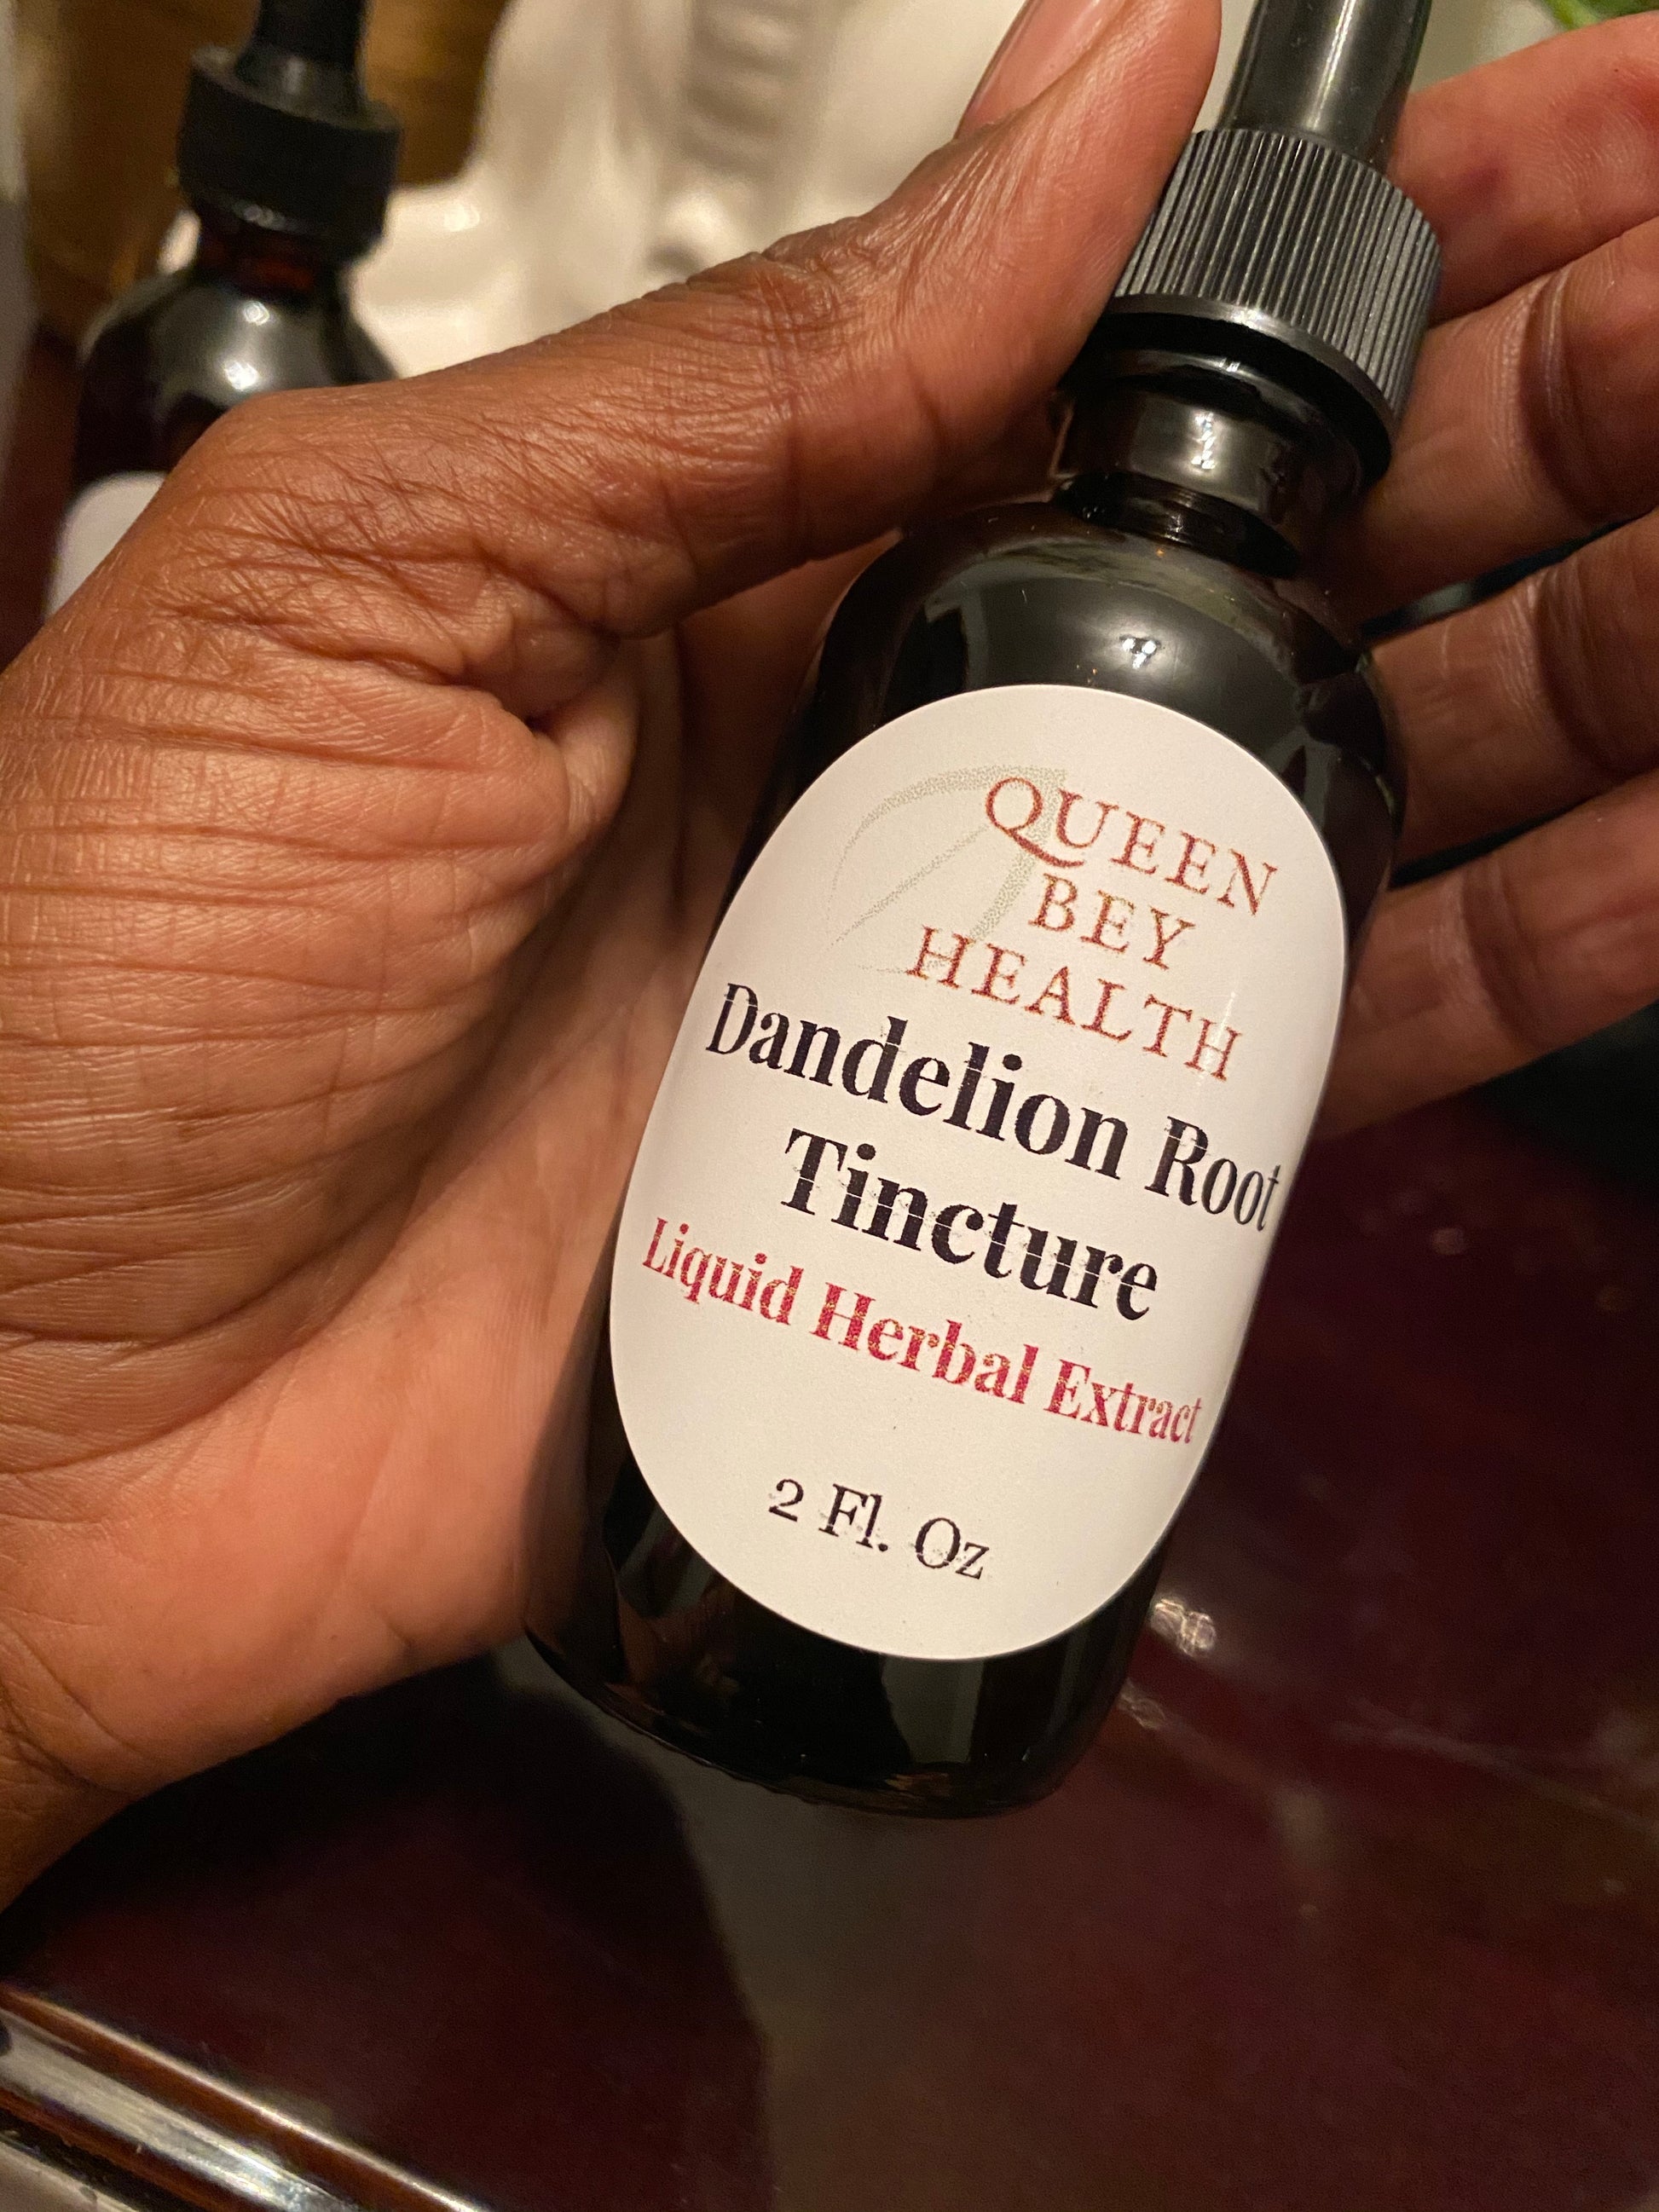 Dandelion Root Tincture - Queen Bey Health 